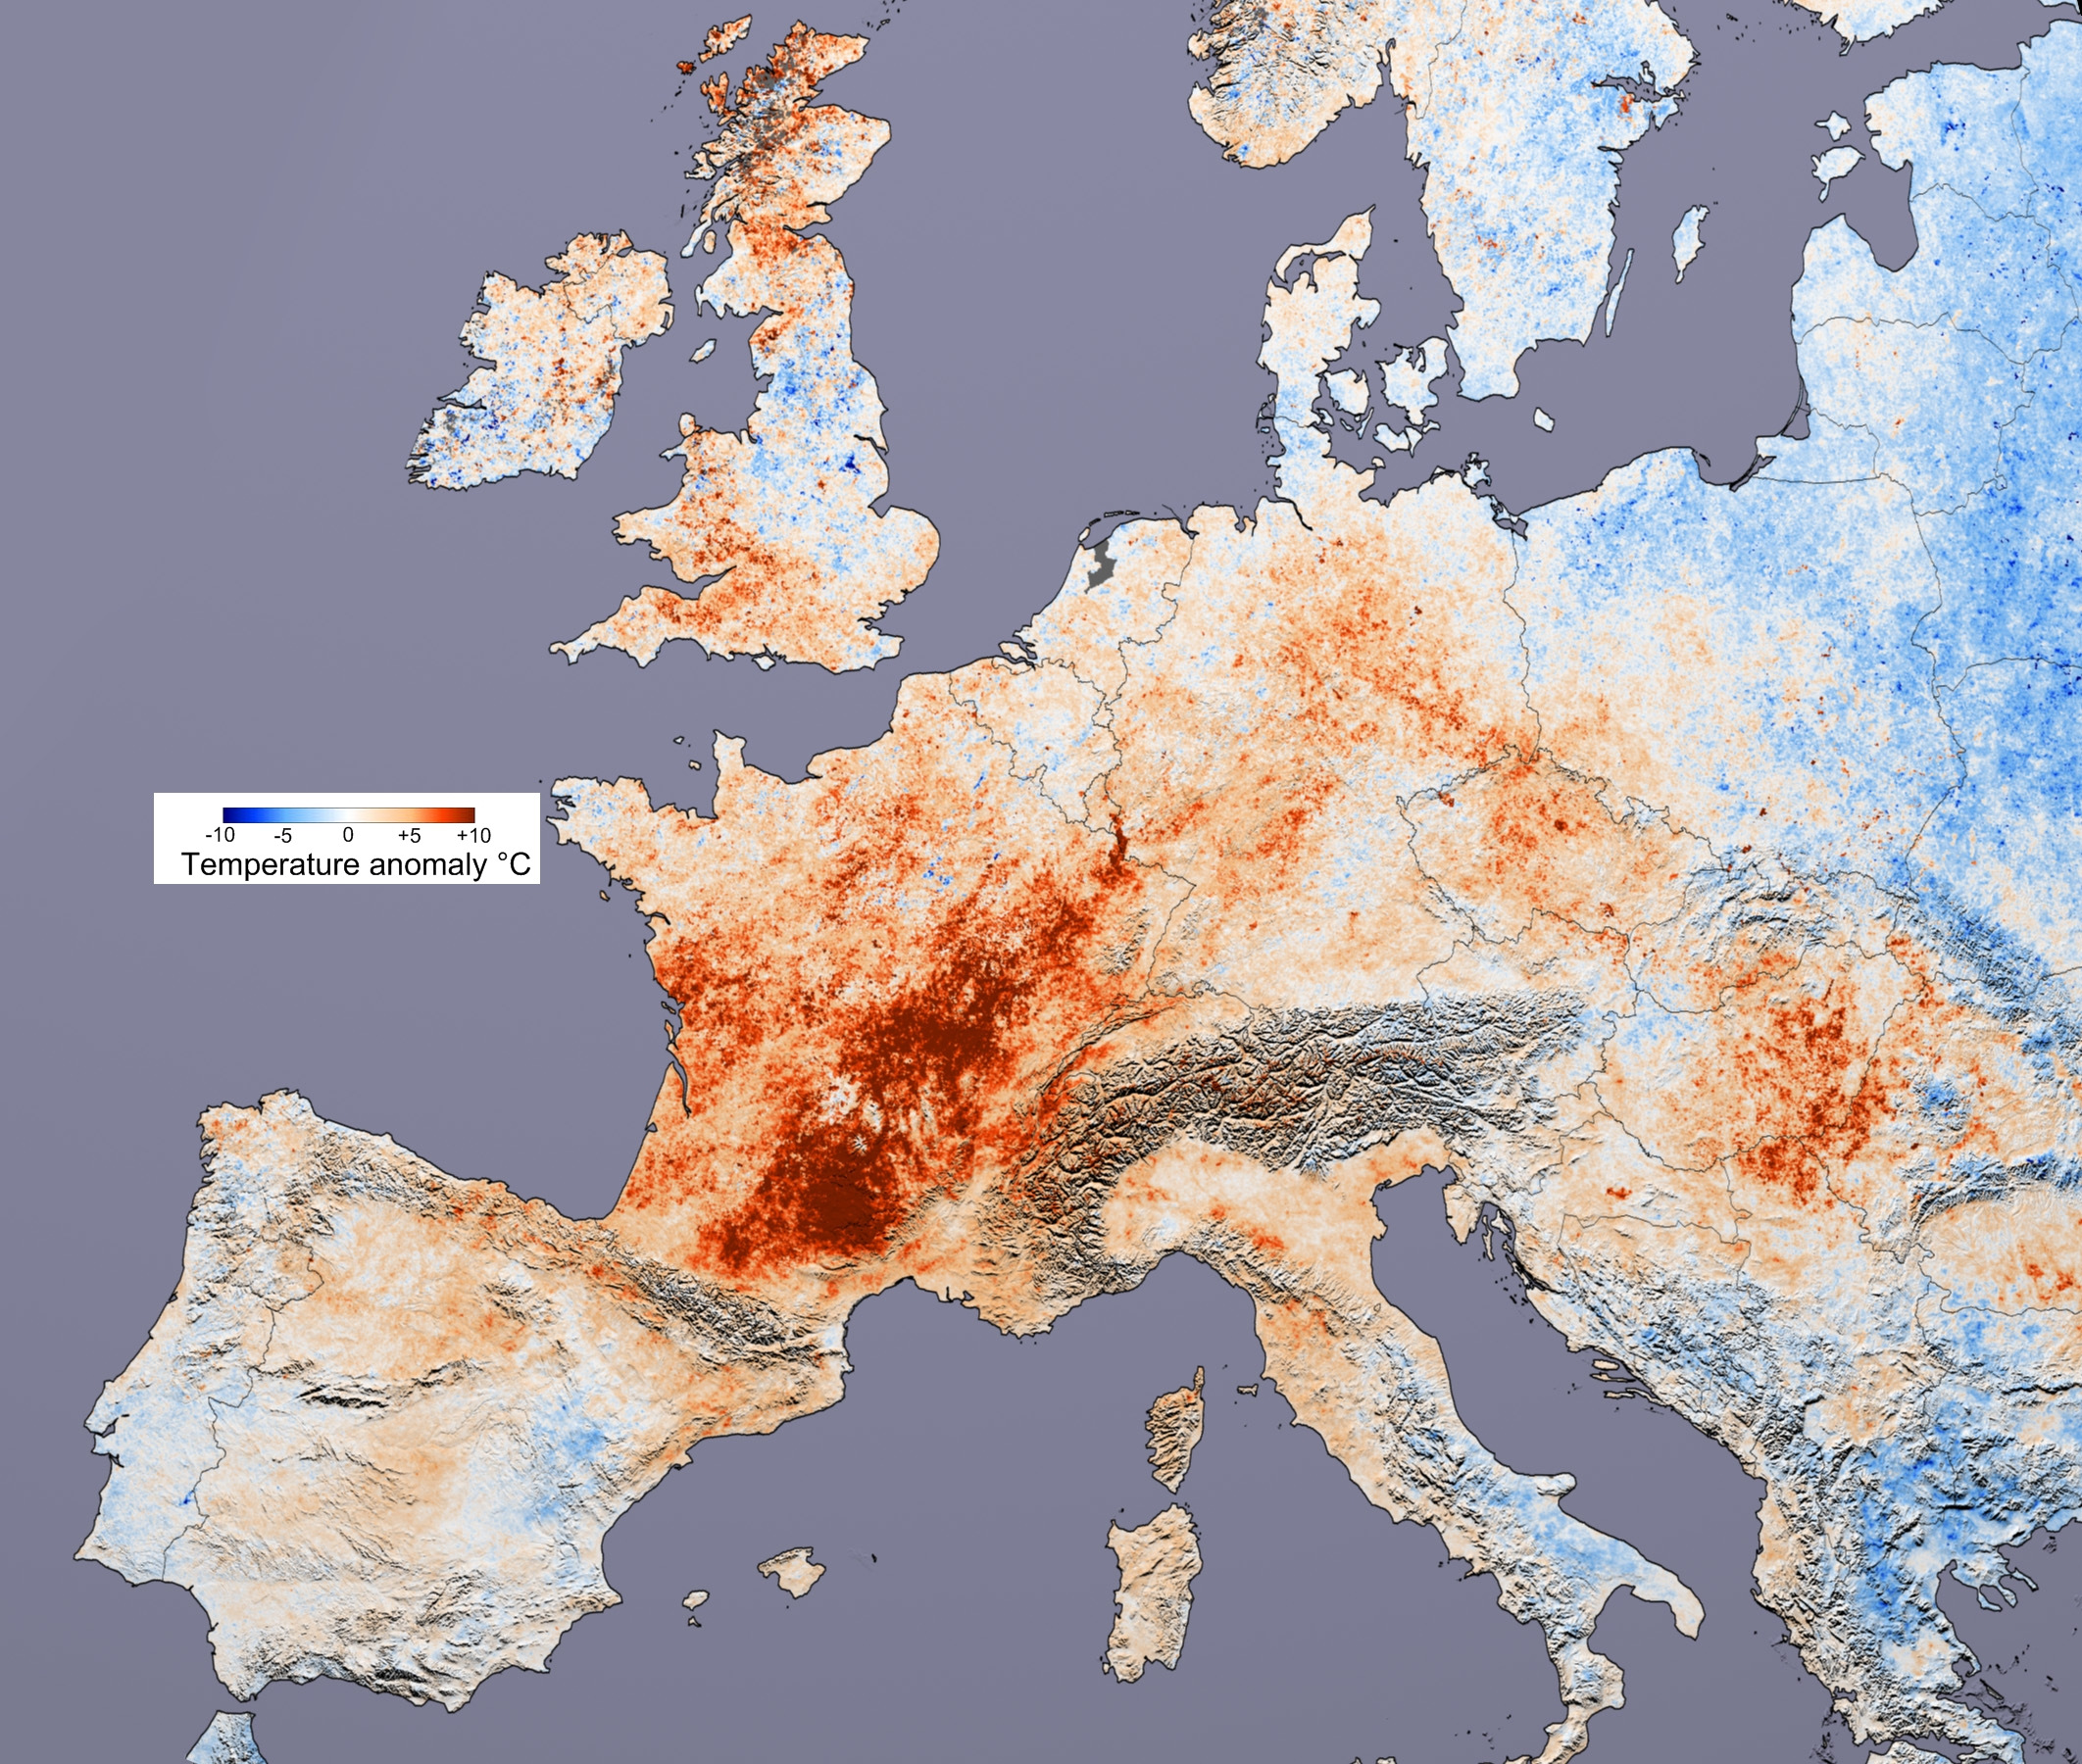 Diferencia de temperaturas respecto a la normal durante la ola de calor europea de 2003. Imagen cortesía de Reto Stockli y Robert Simmon, según los datos proporcionados por el Equipo de Ciencias de la Tierra de MODIS.